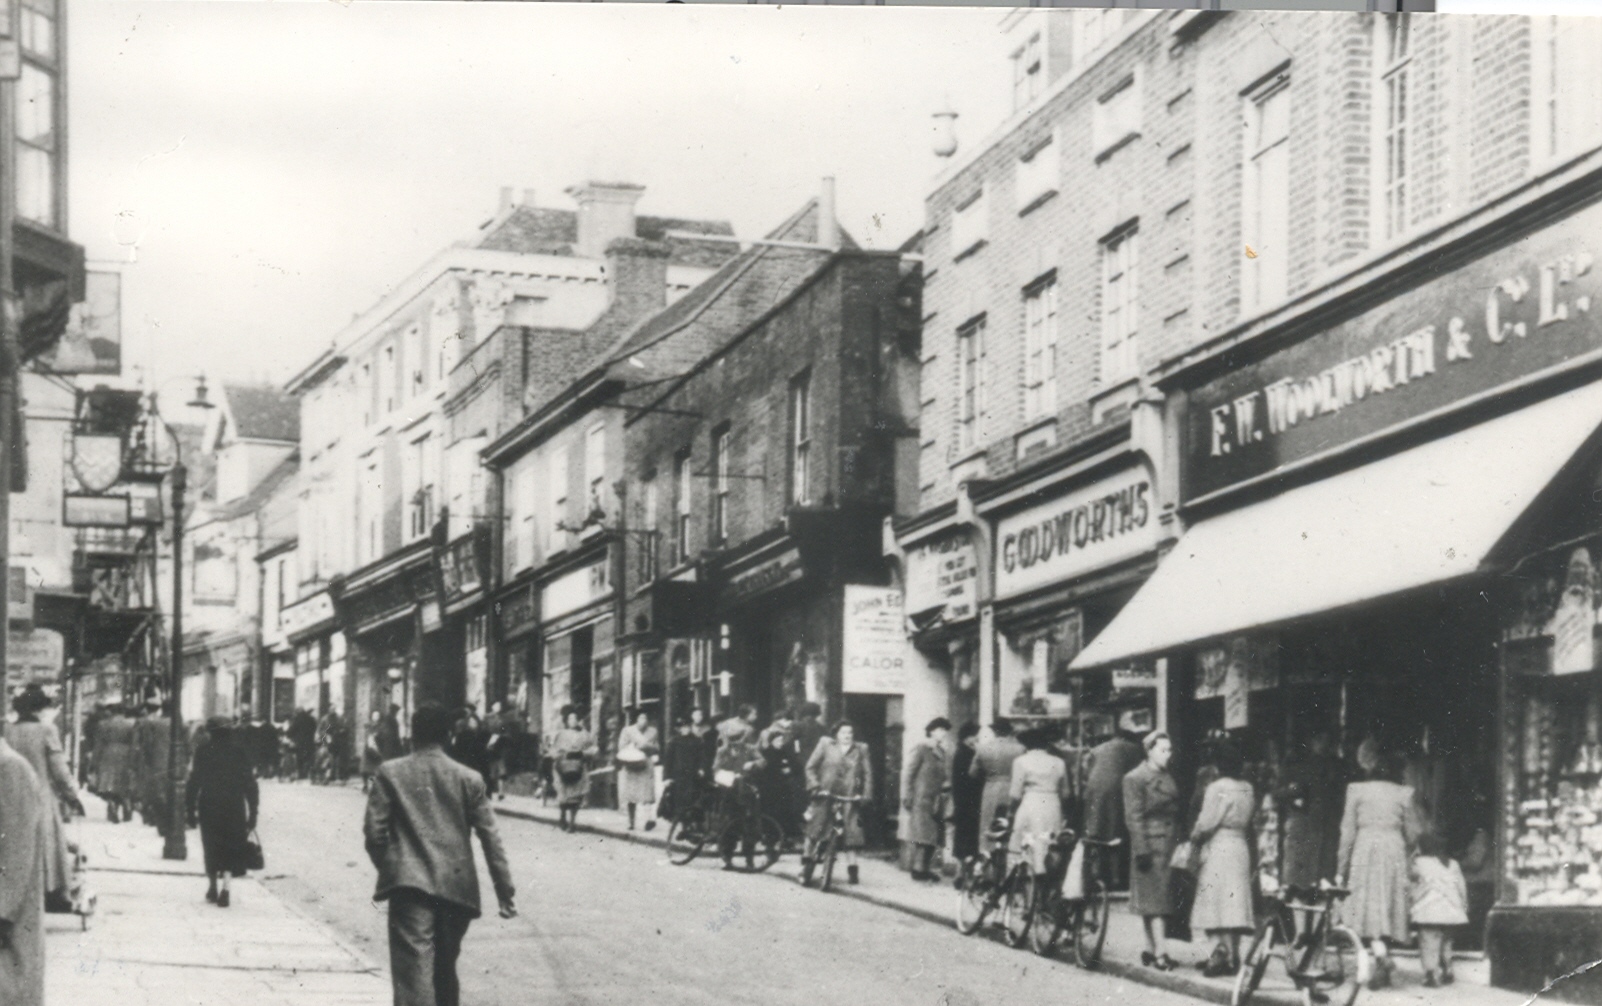 Hemel Hempstead High Street circa 1949